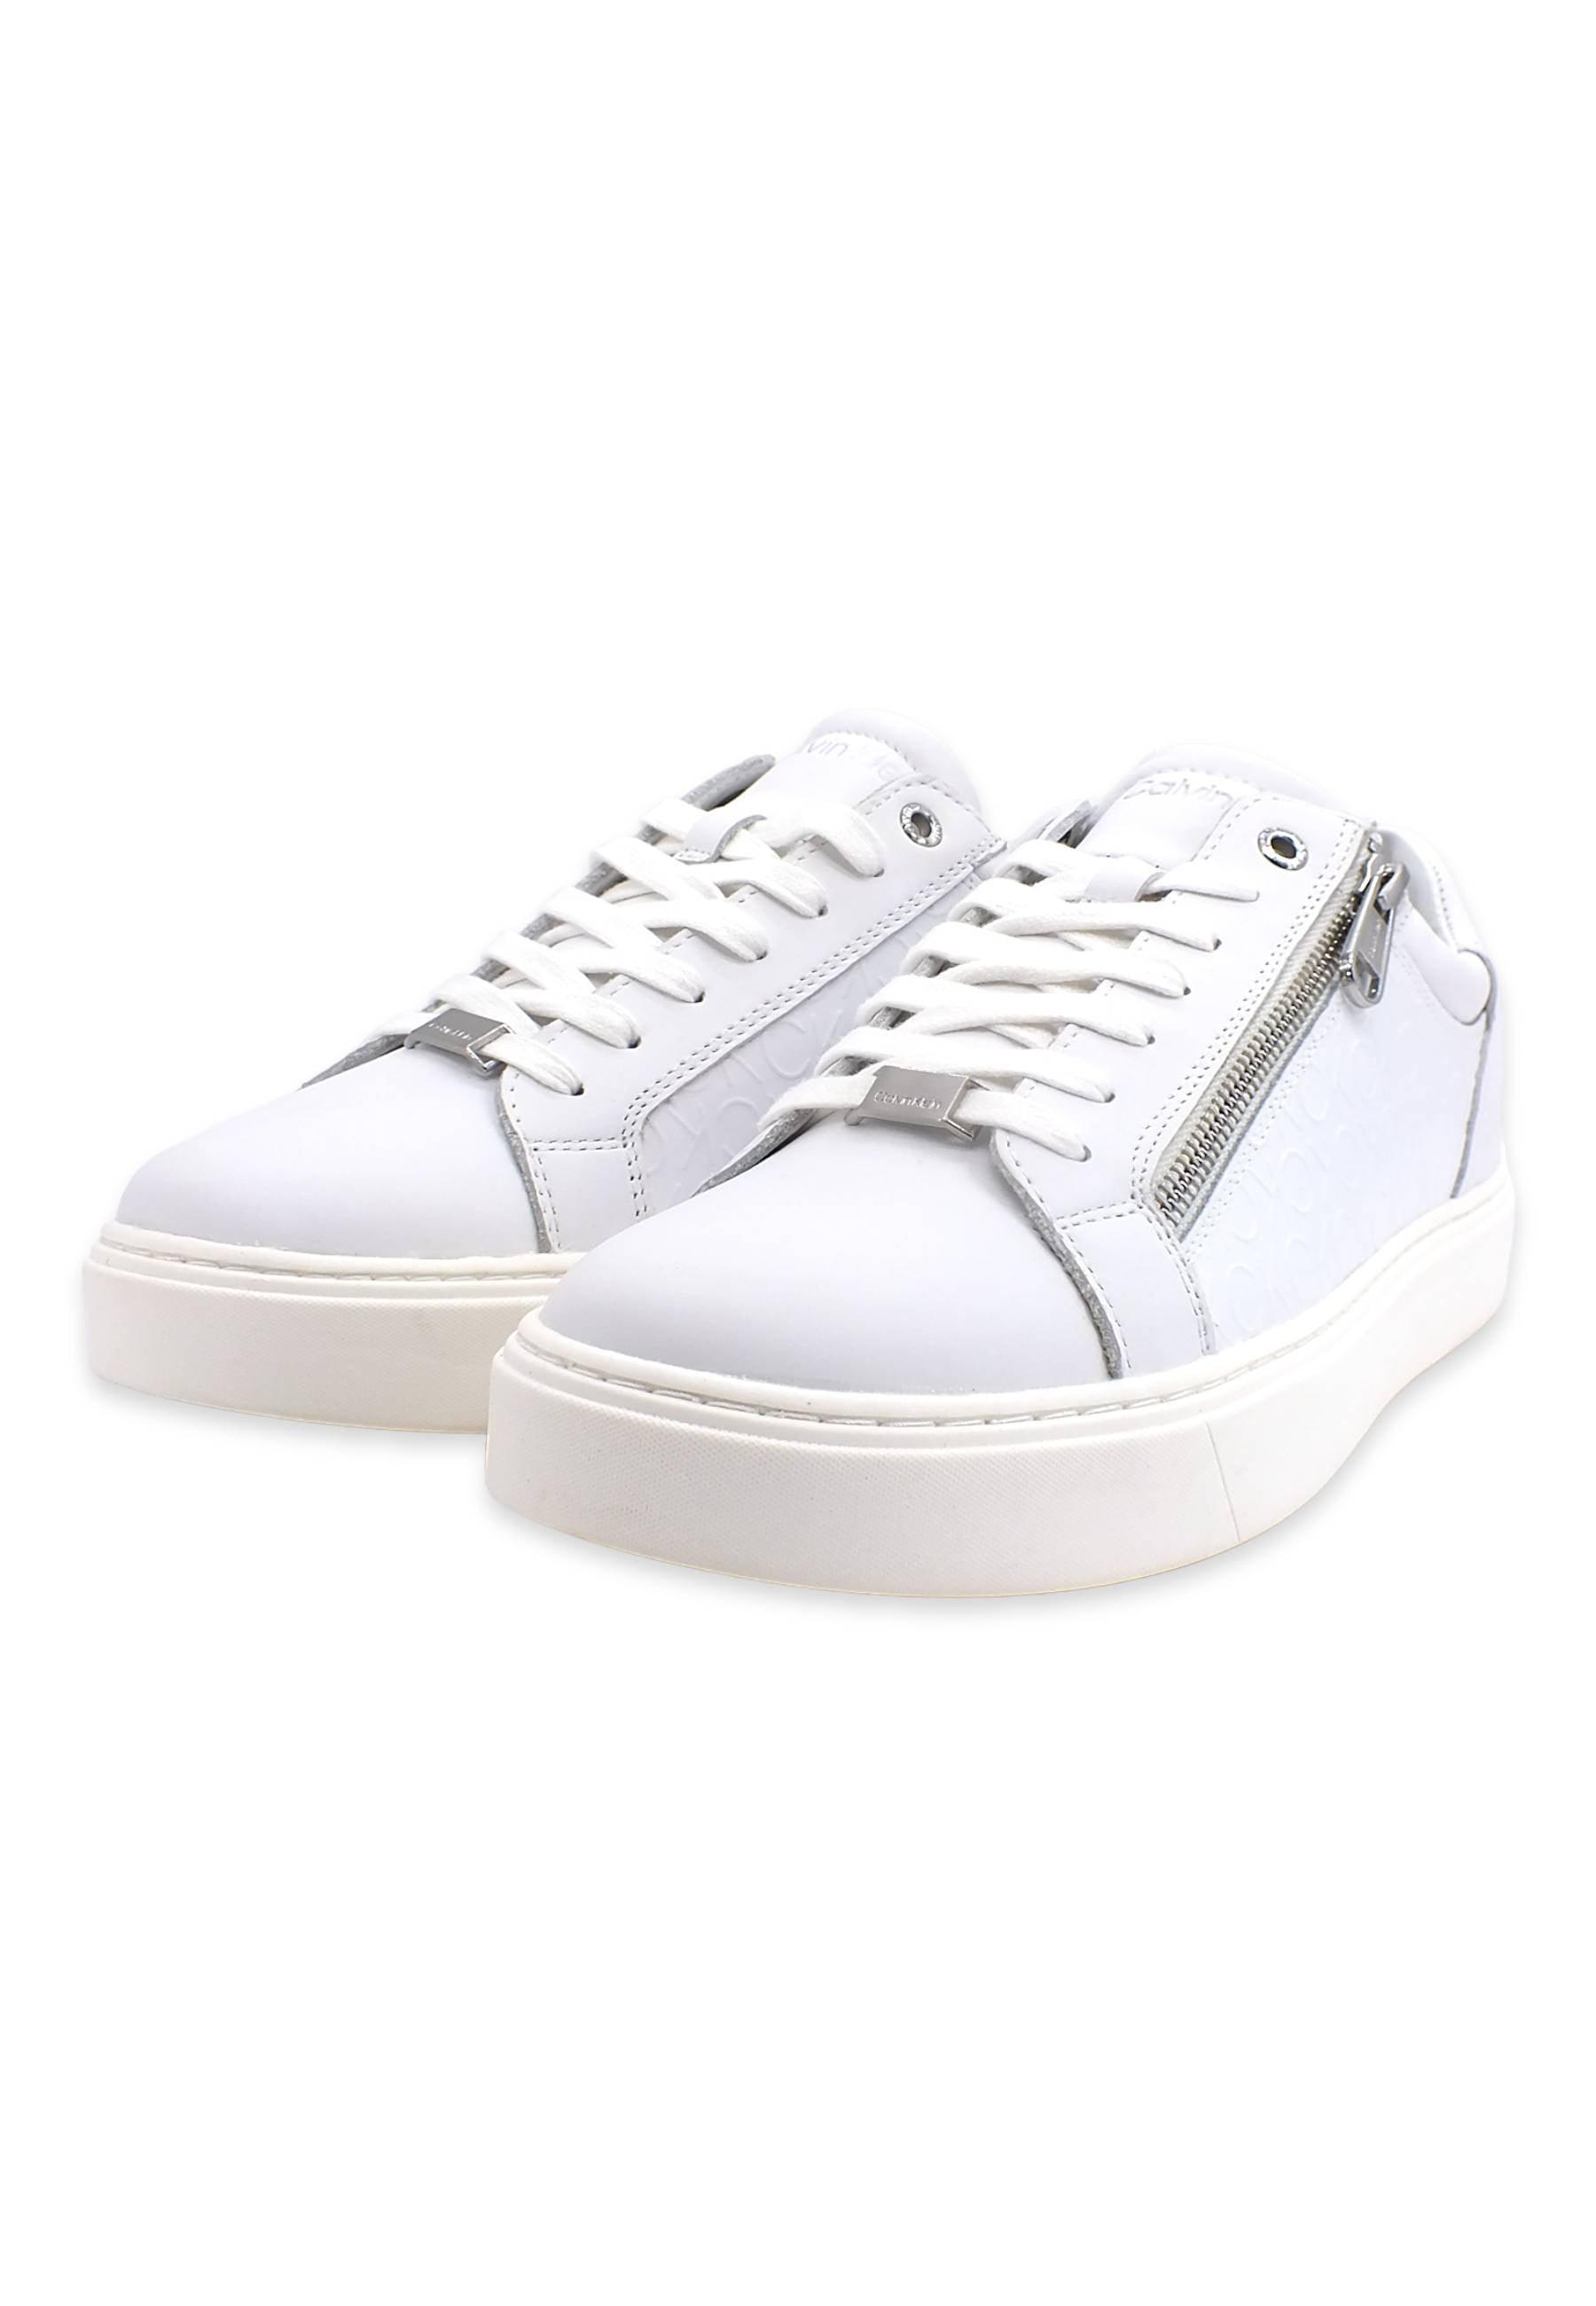 CALVIN KLEIN Sneaker Low Mono White Mono HM0HM00813 - Sandrini Calzature e Abbigliamento